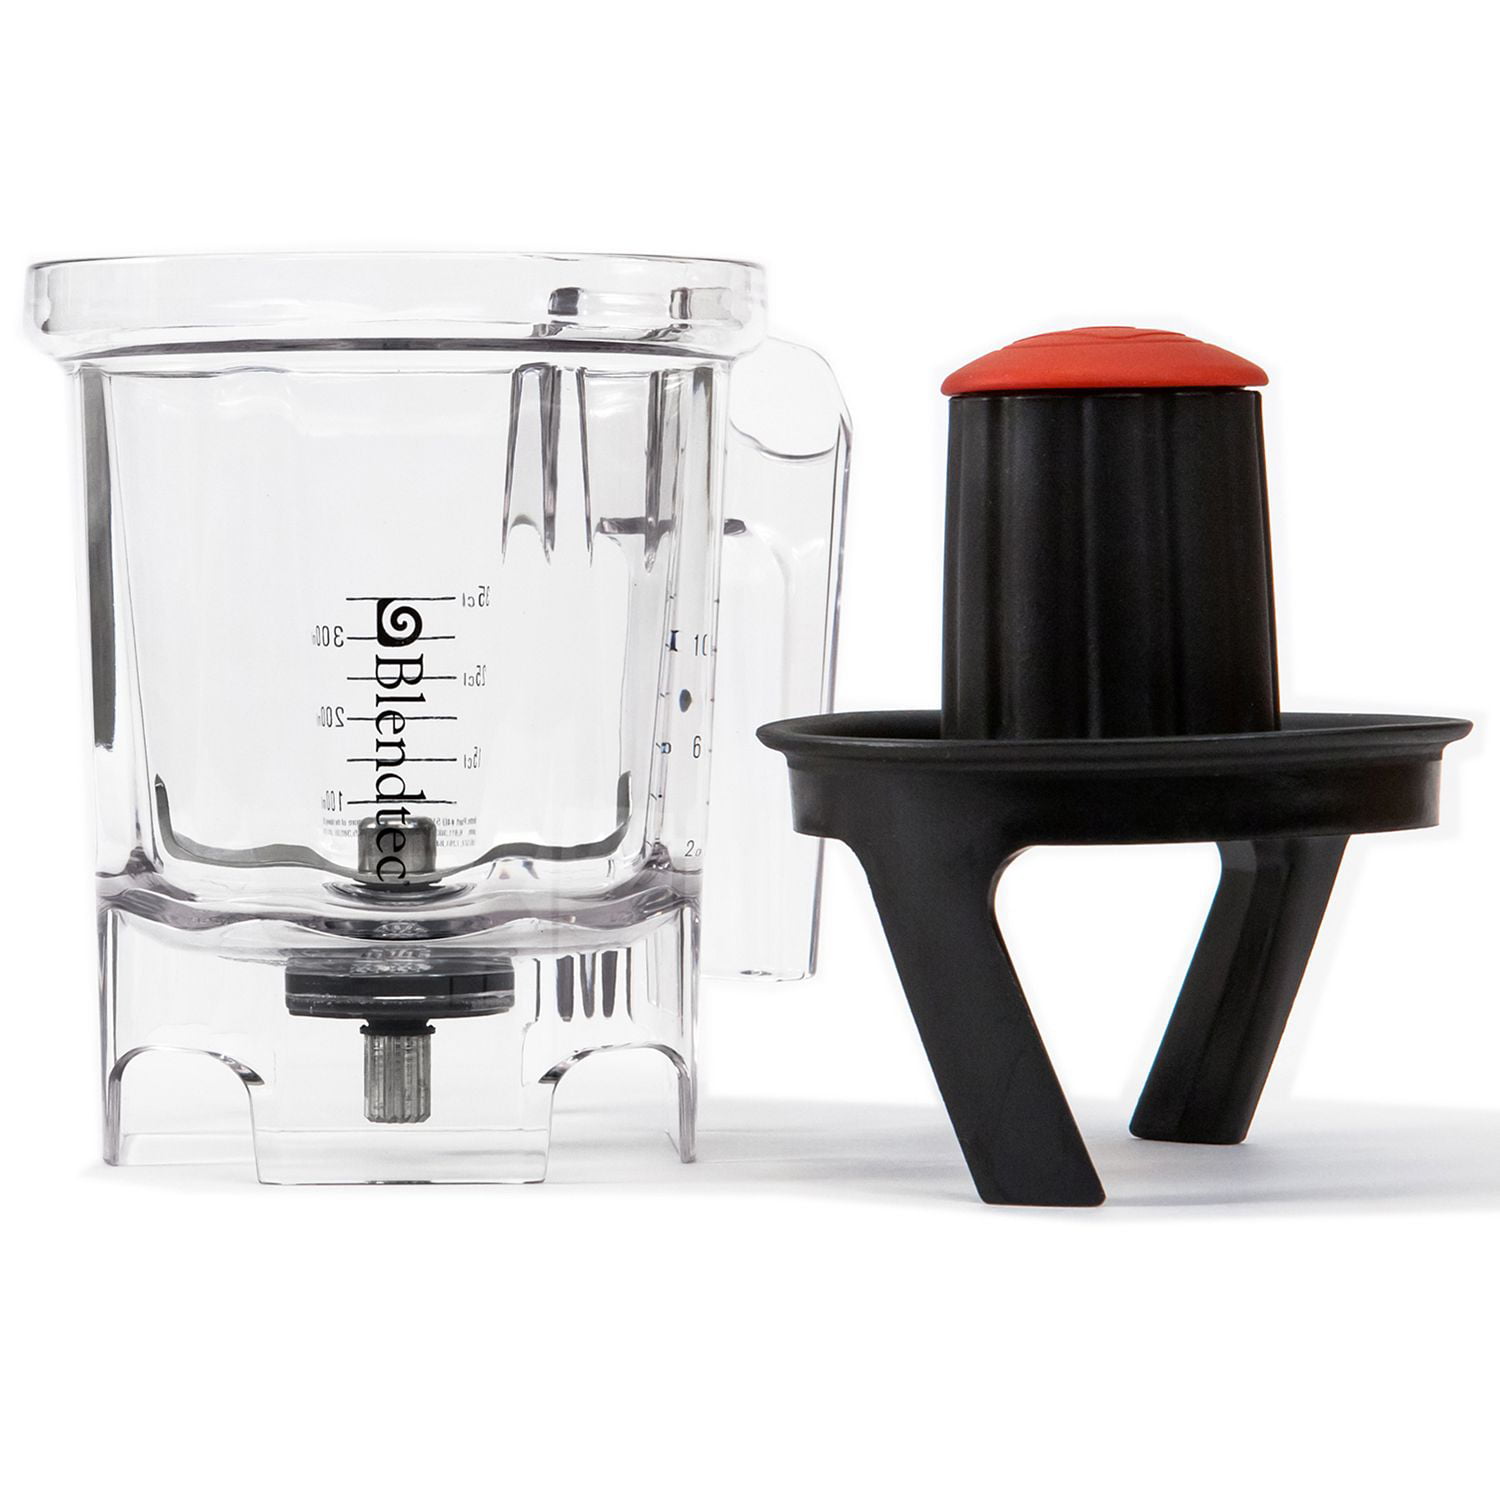 Blendtec Twister Jar for High Performance Blender